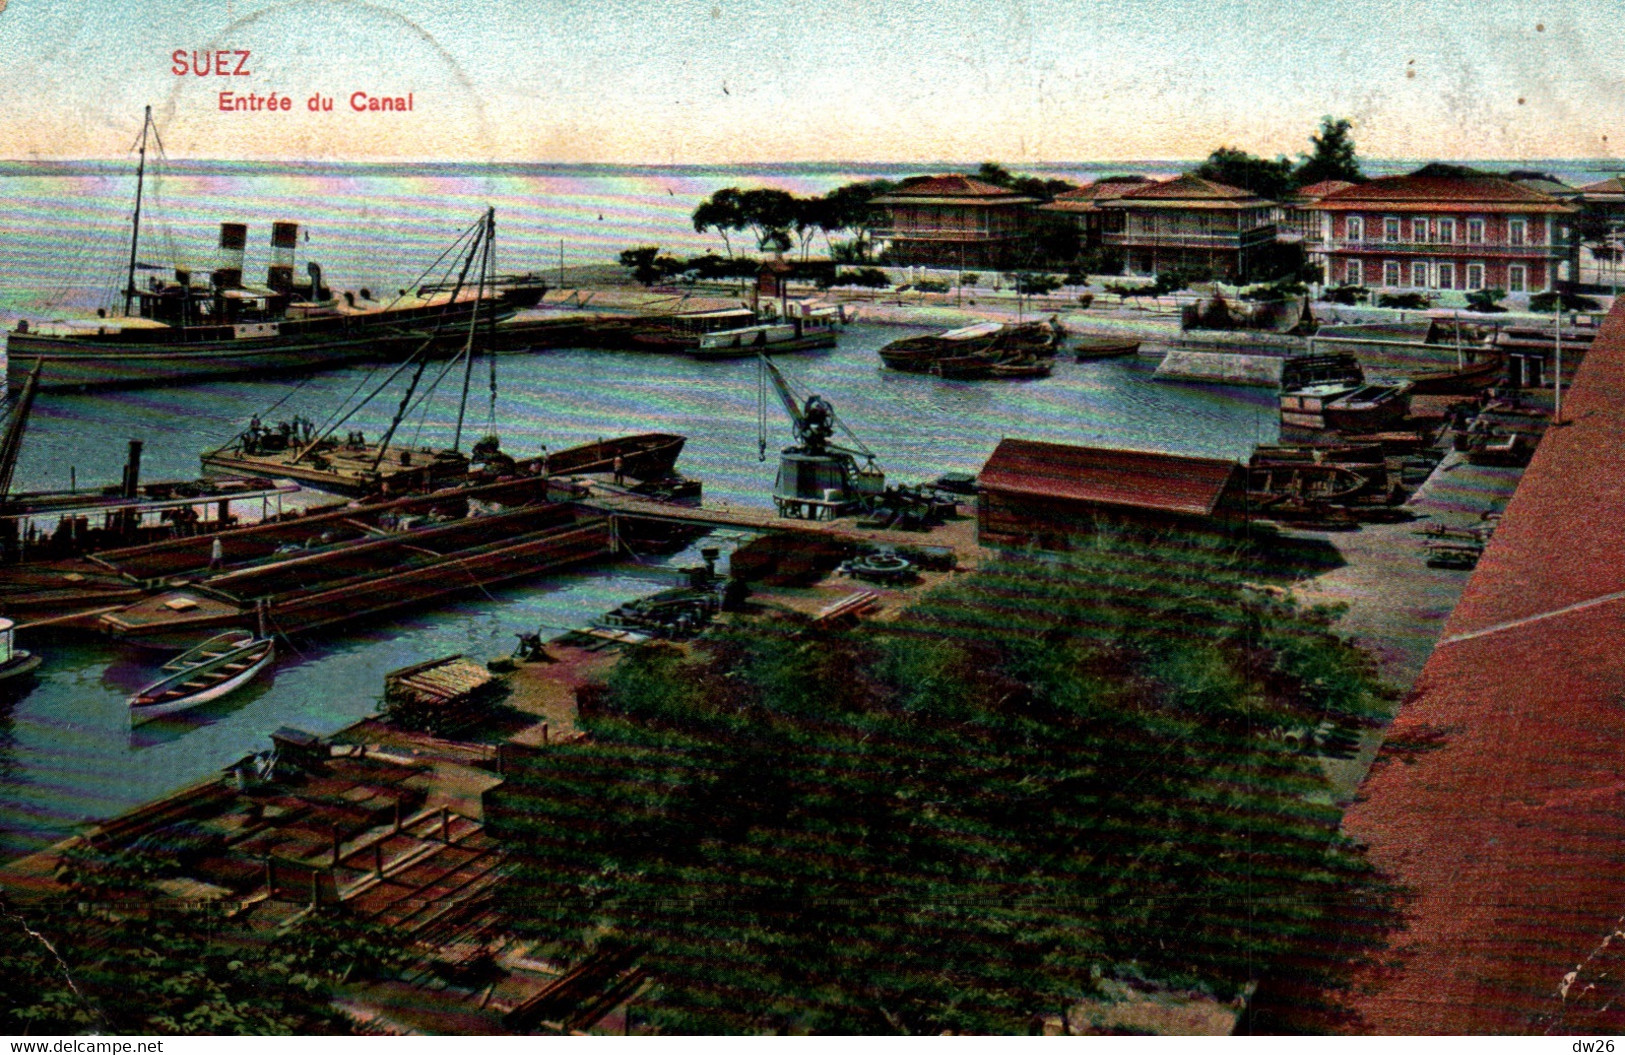 Egypte - Suez, Entrée Du Canal, Bateaux à Quai - Edition Ephtimios Frères - Carte N° 55053 - Suez